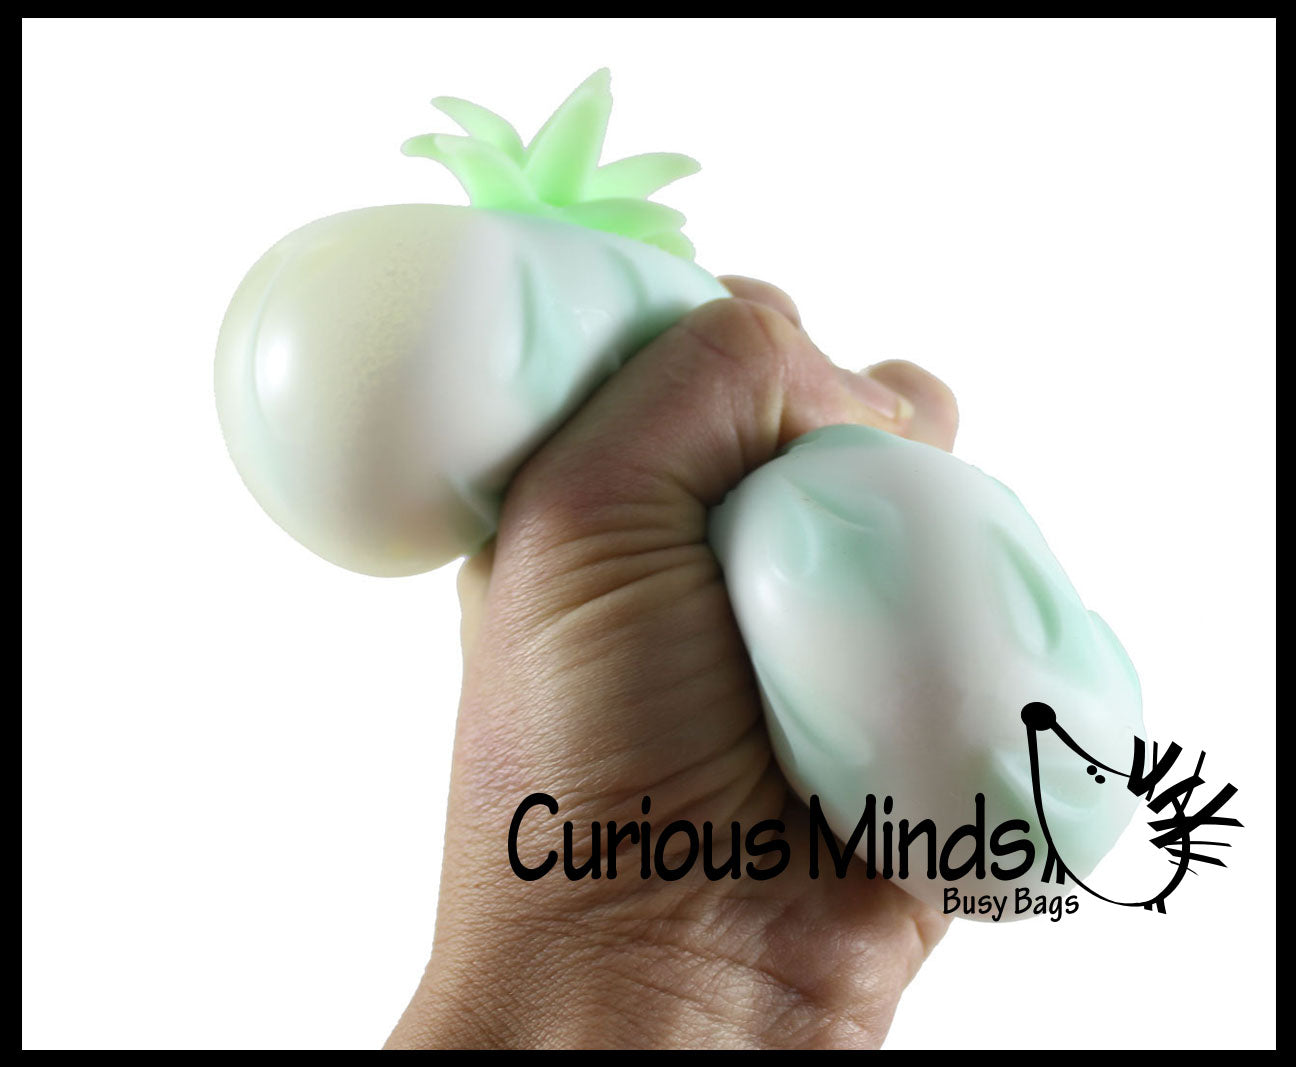 Cute Pineapple Soft Fluff- Filled Squeeze Stress Balls  -  Sensory, Stress, Fidget Toy Super Soft Fruit